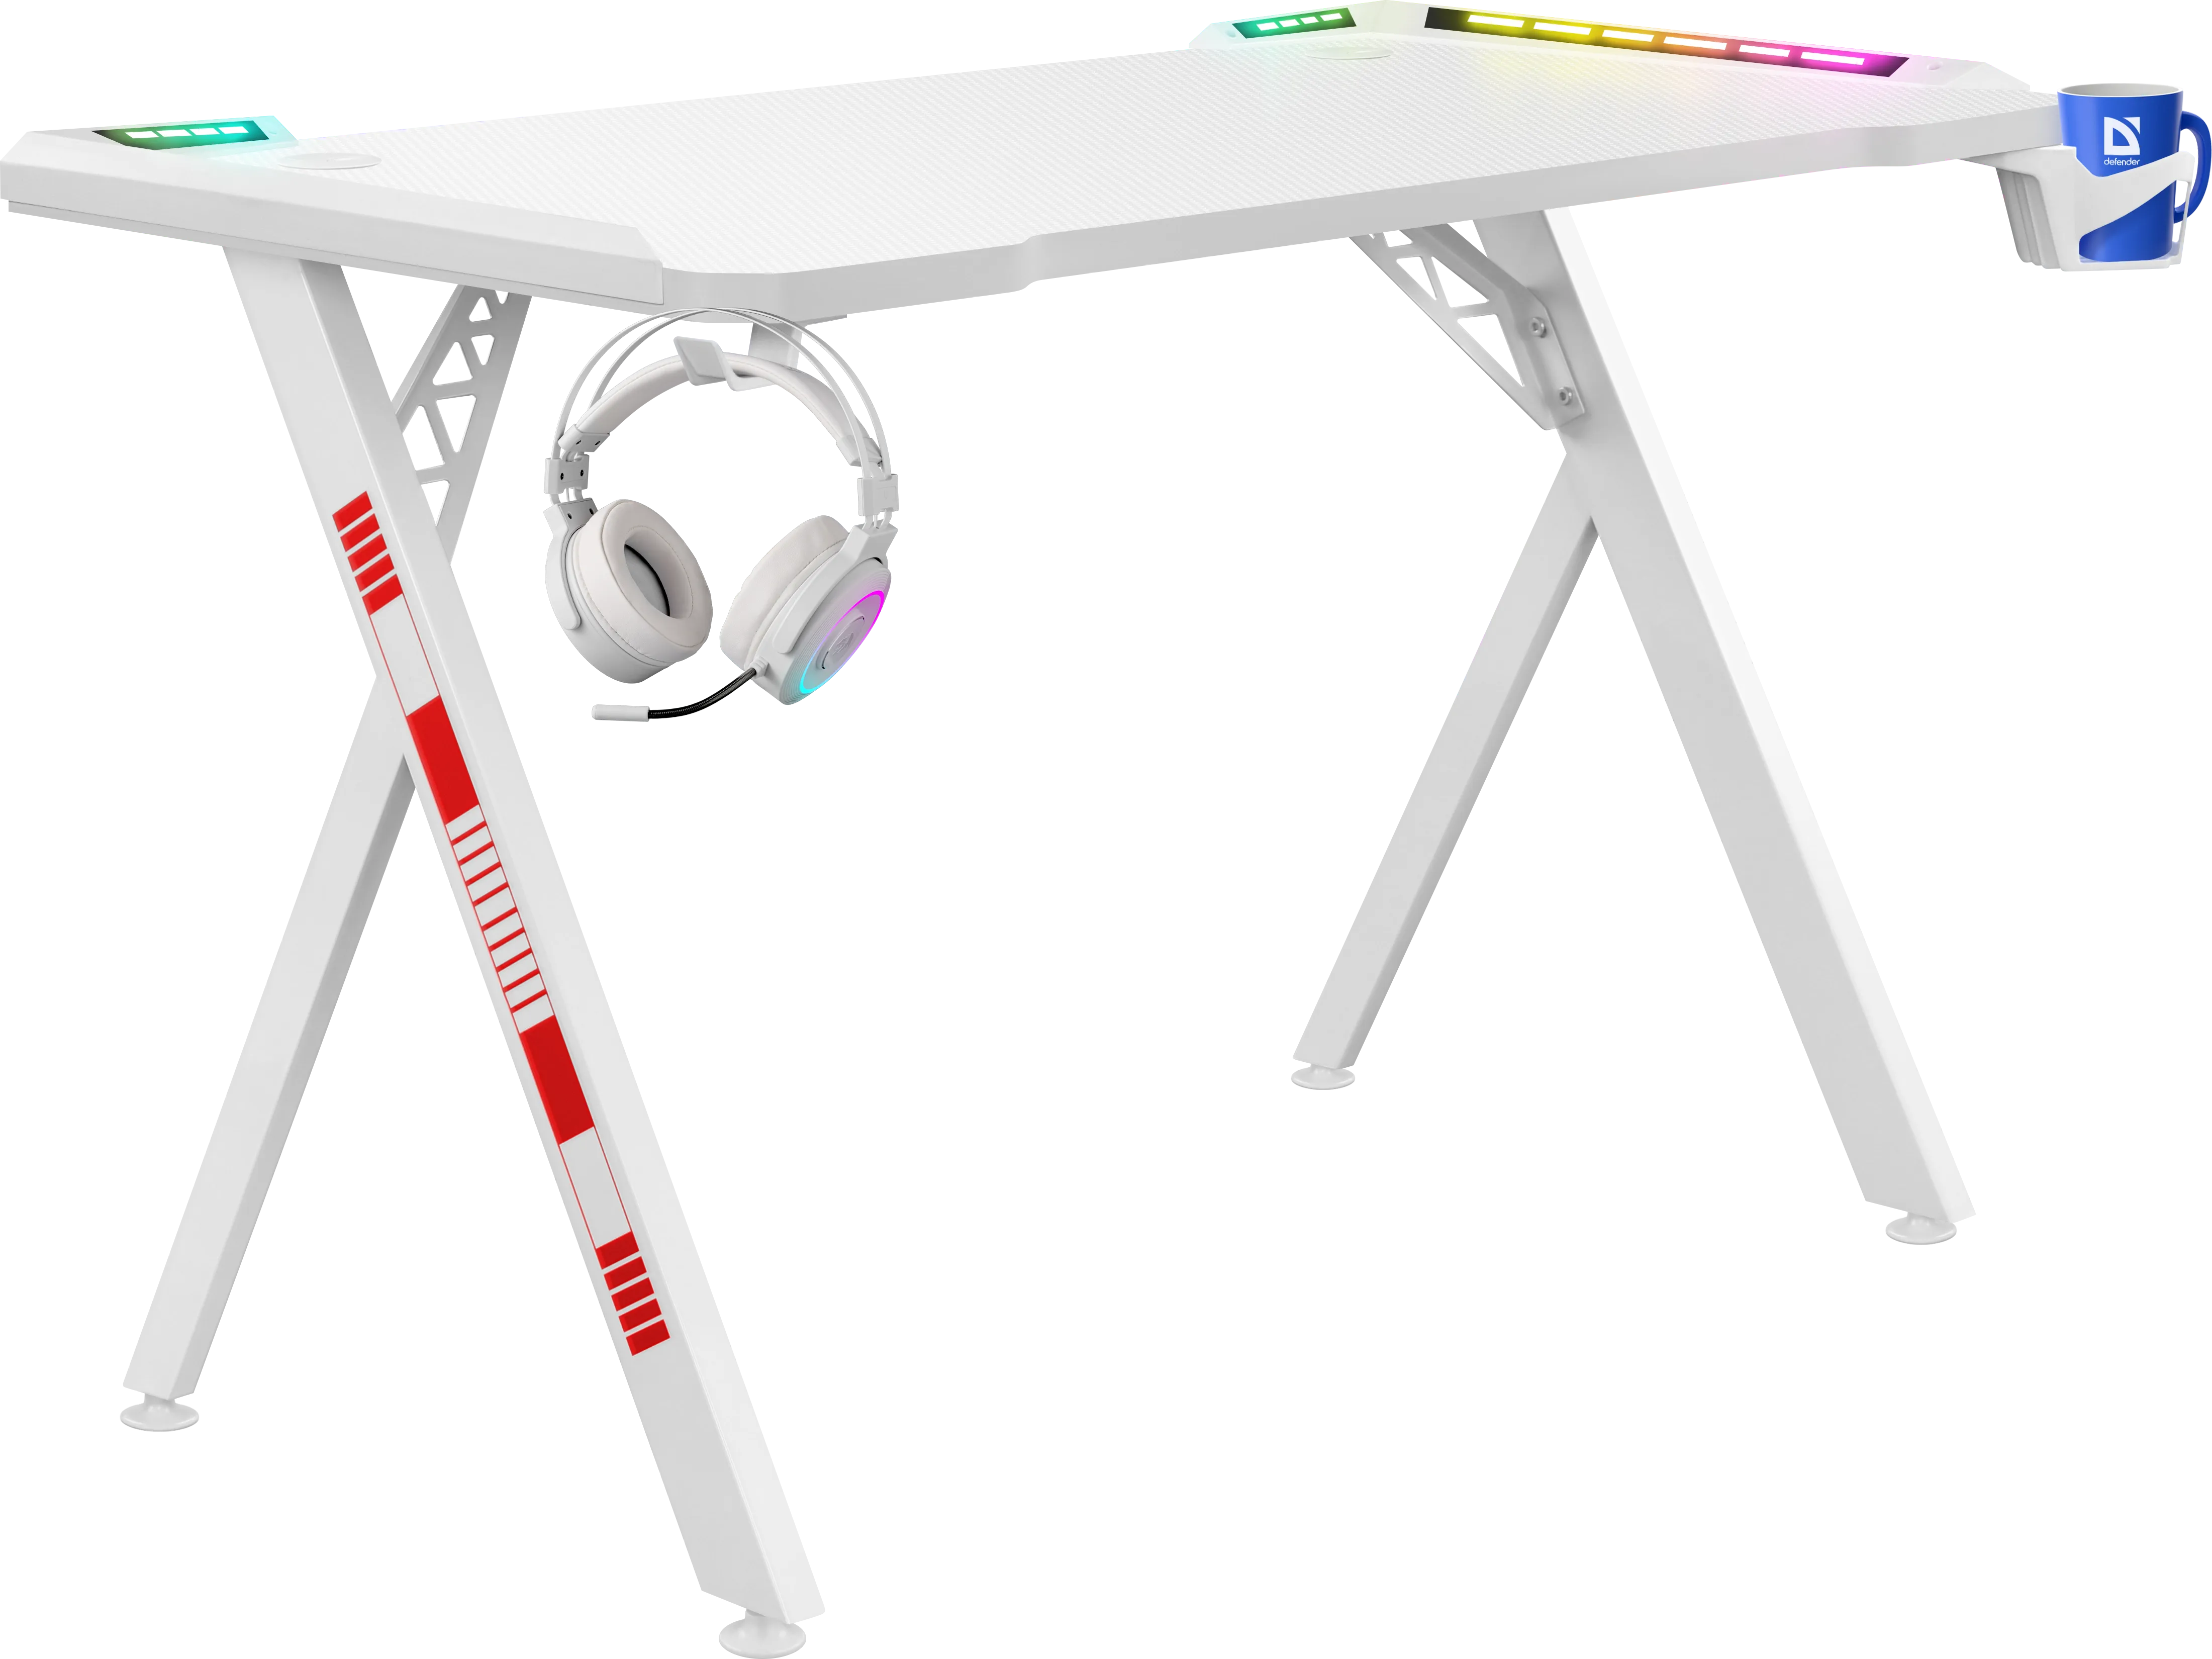 Стол defender. Игровой стол Defender Infinity RGB, подвес кружки+гарн, белый. Игровой стол Дефендер. Стол Defender Spirit RGB Black. Игровой стол Defender Spirit RGB,подвес кружки+гарн., черный.